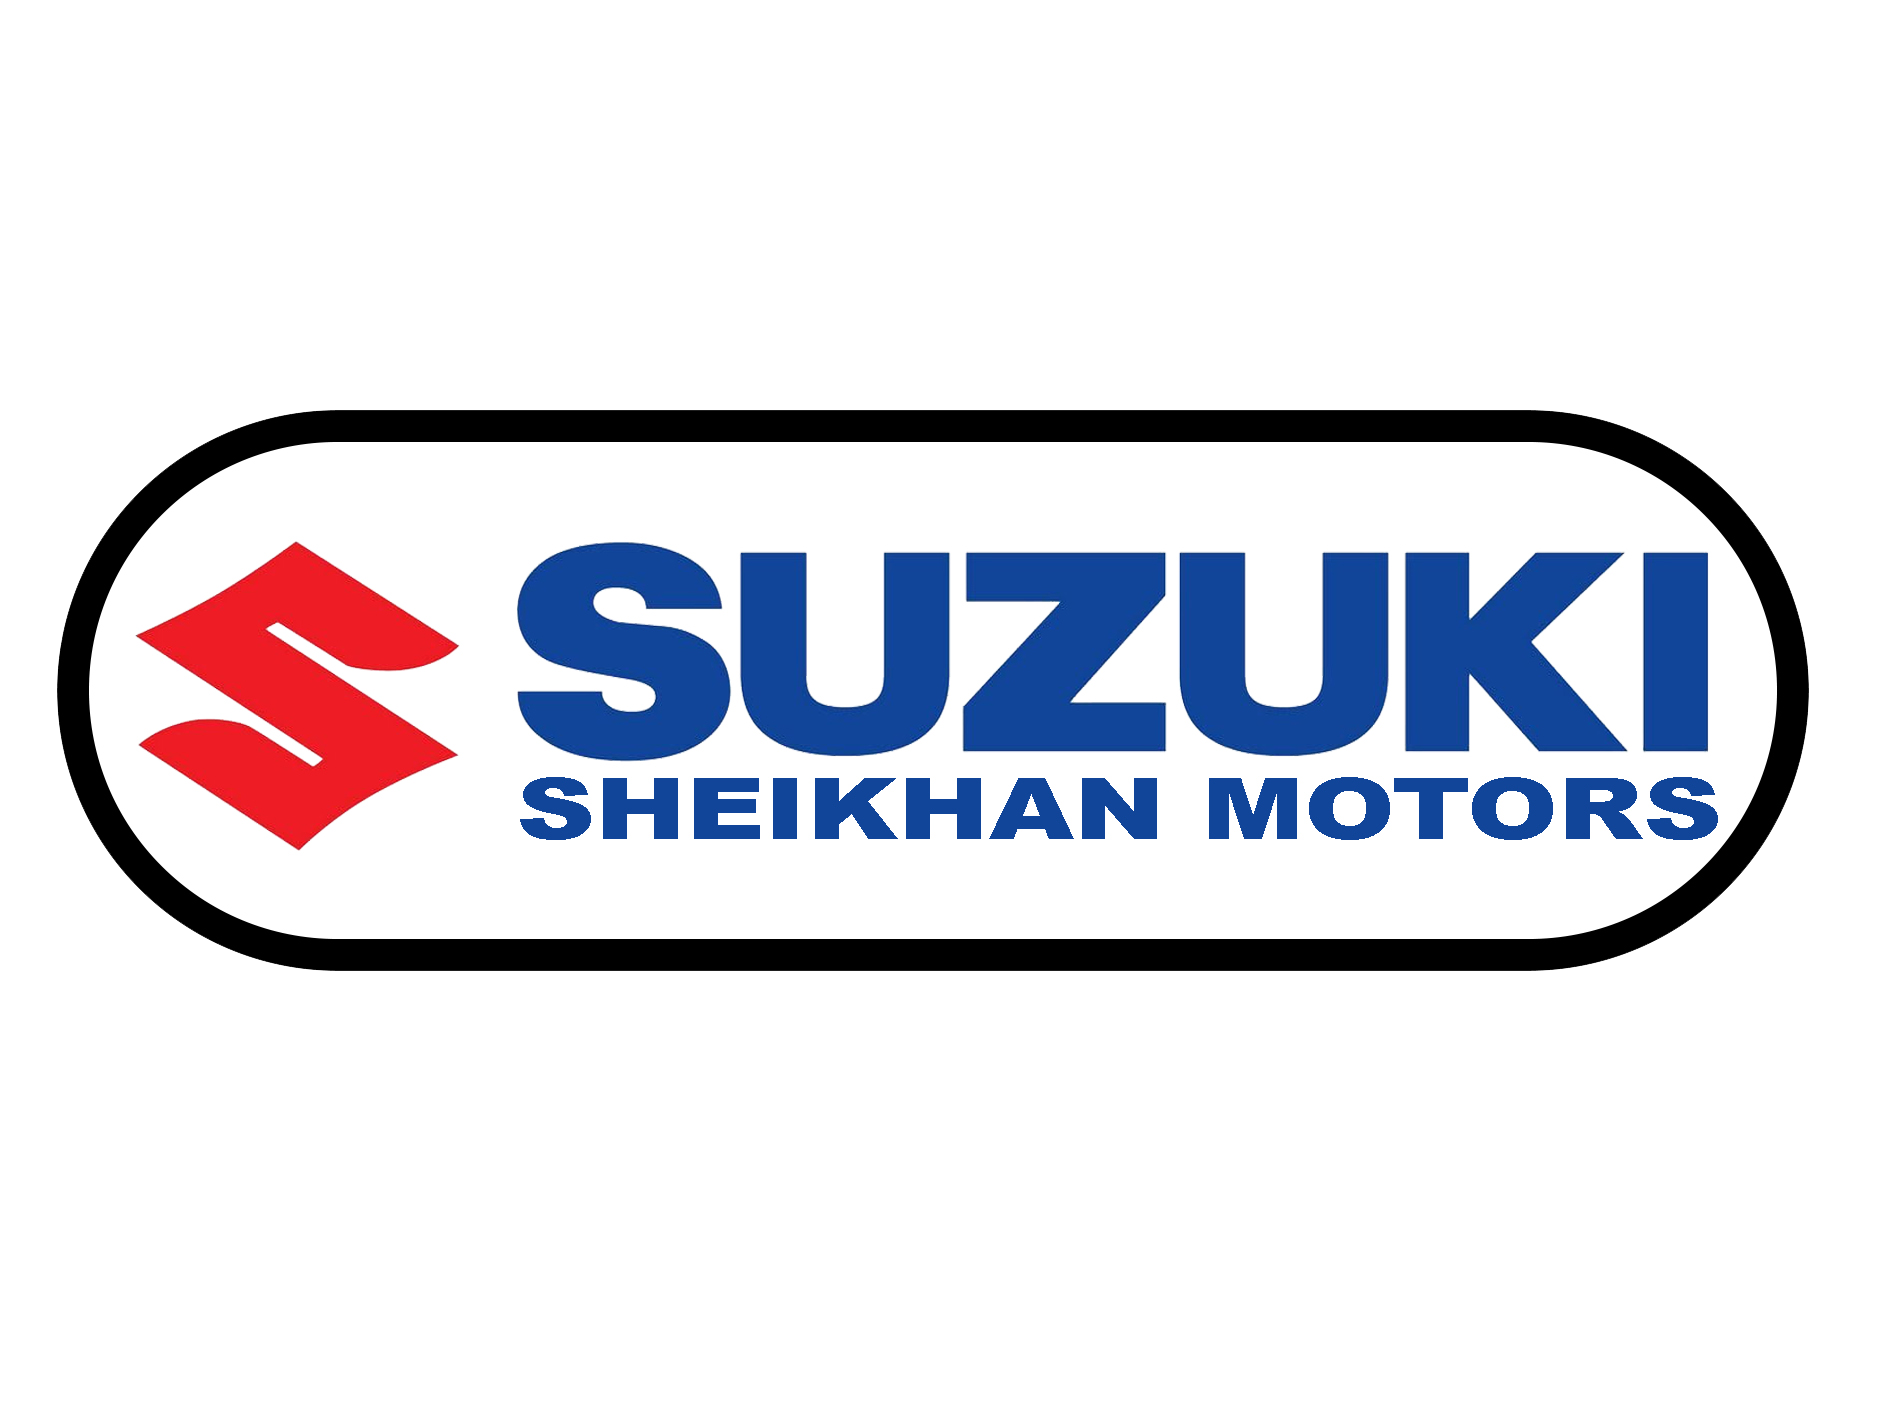 Suzuki Sheikhan Motors 